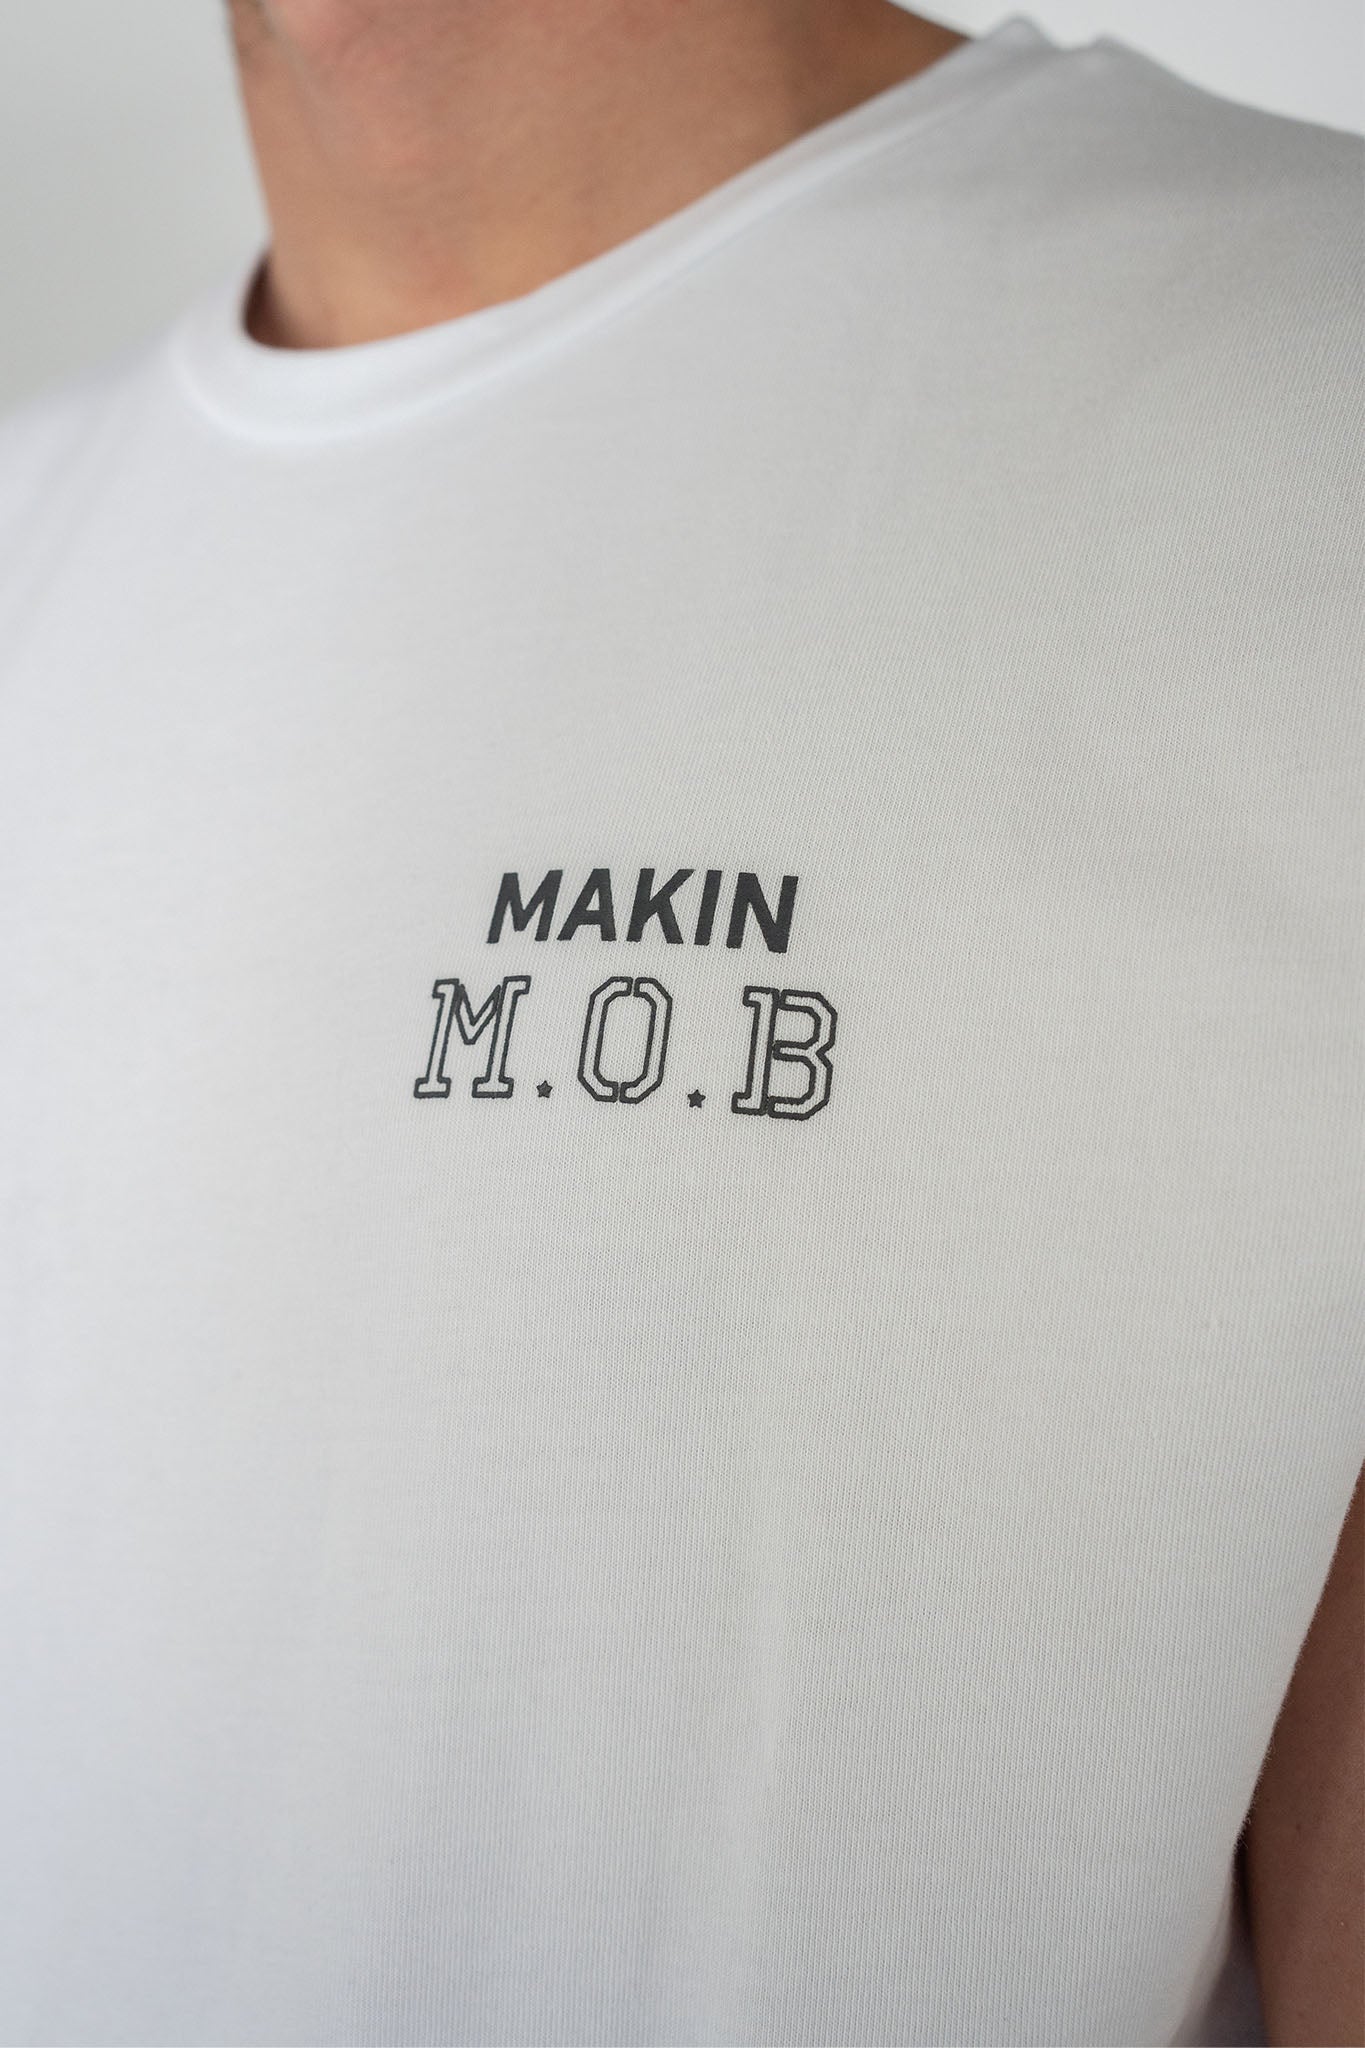 M.O.B. Singlet in White, Makin Memories